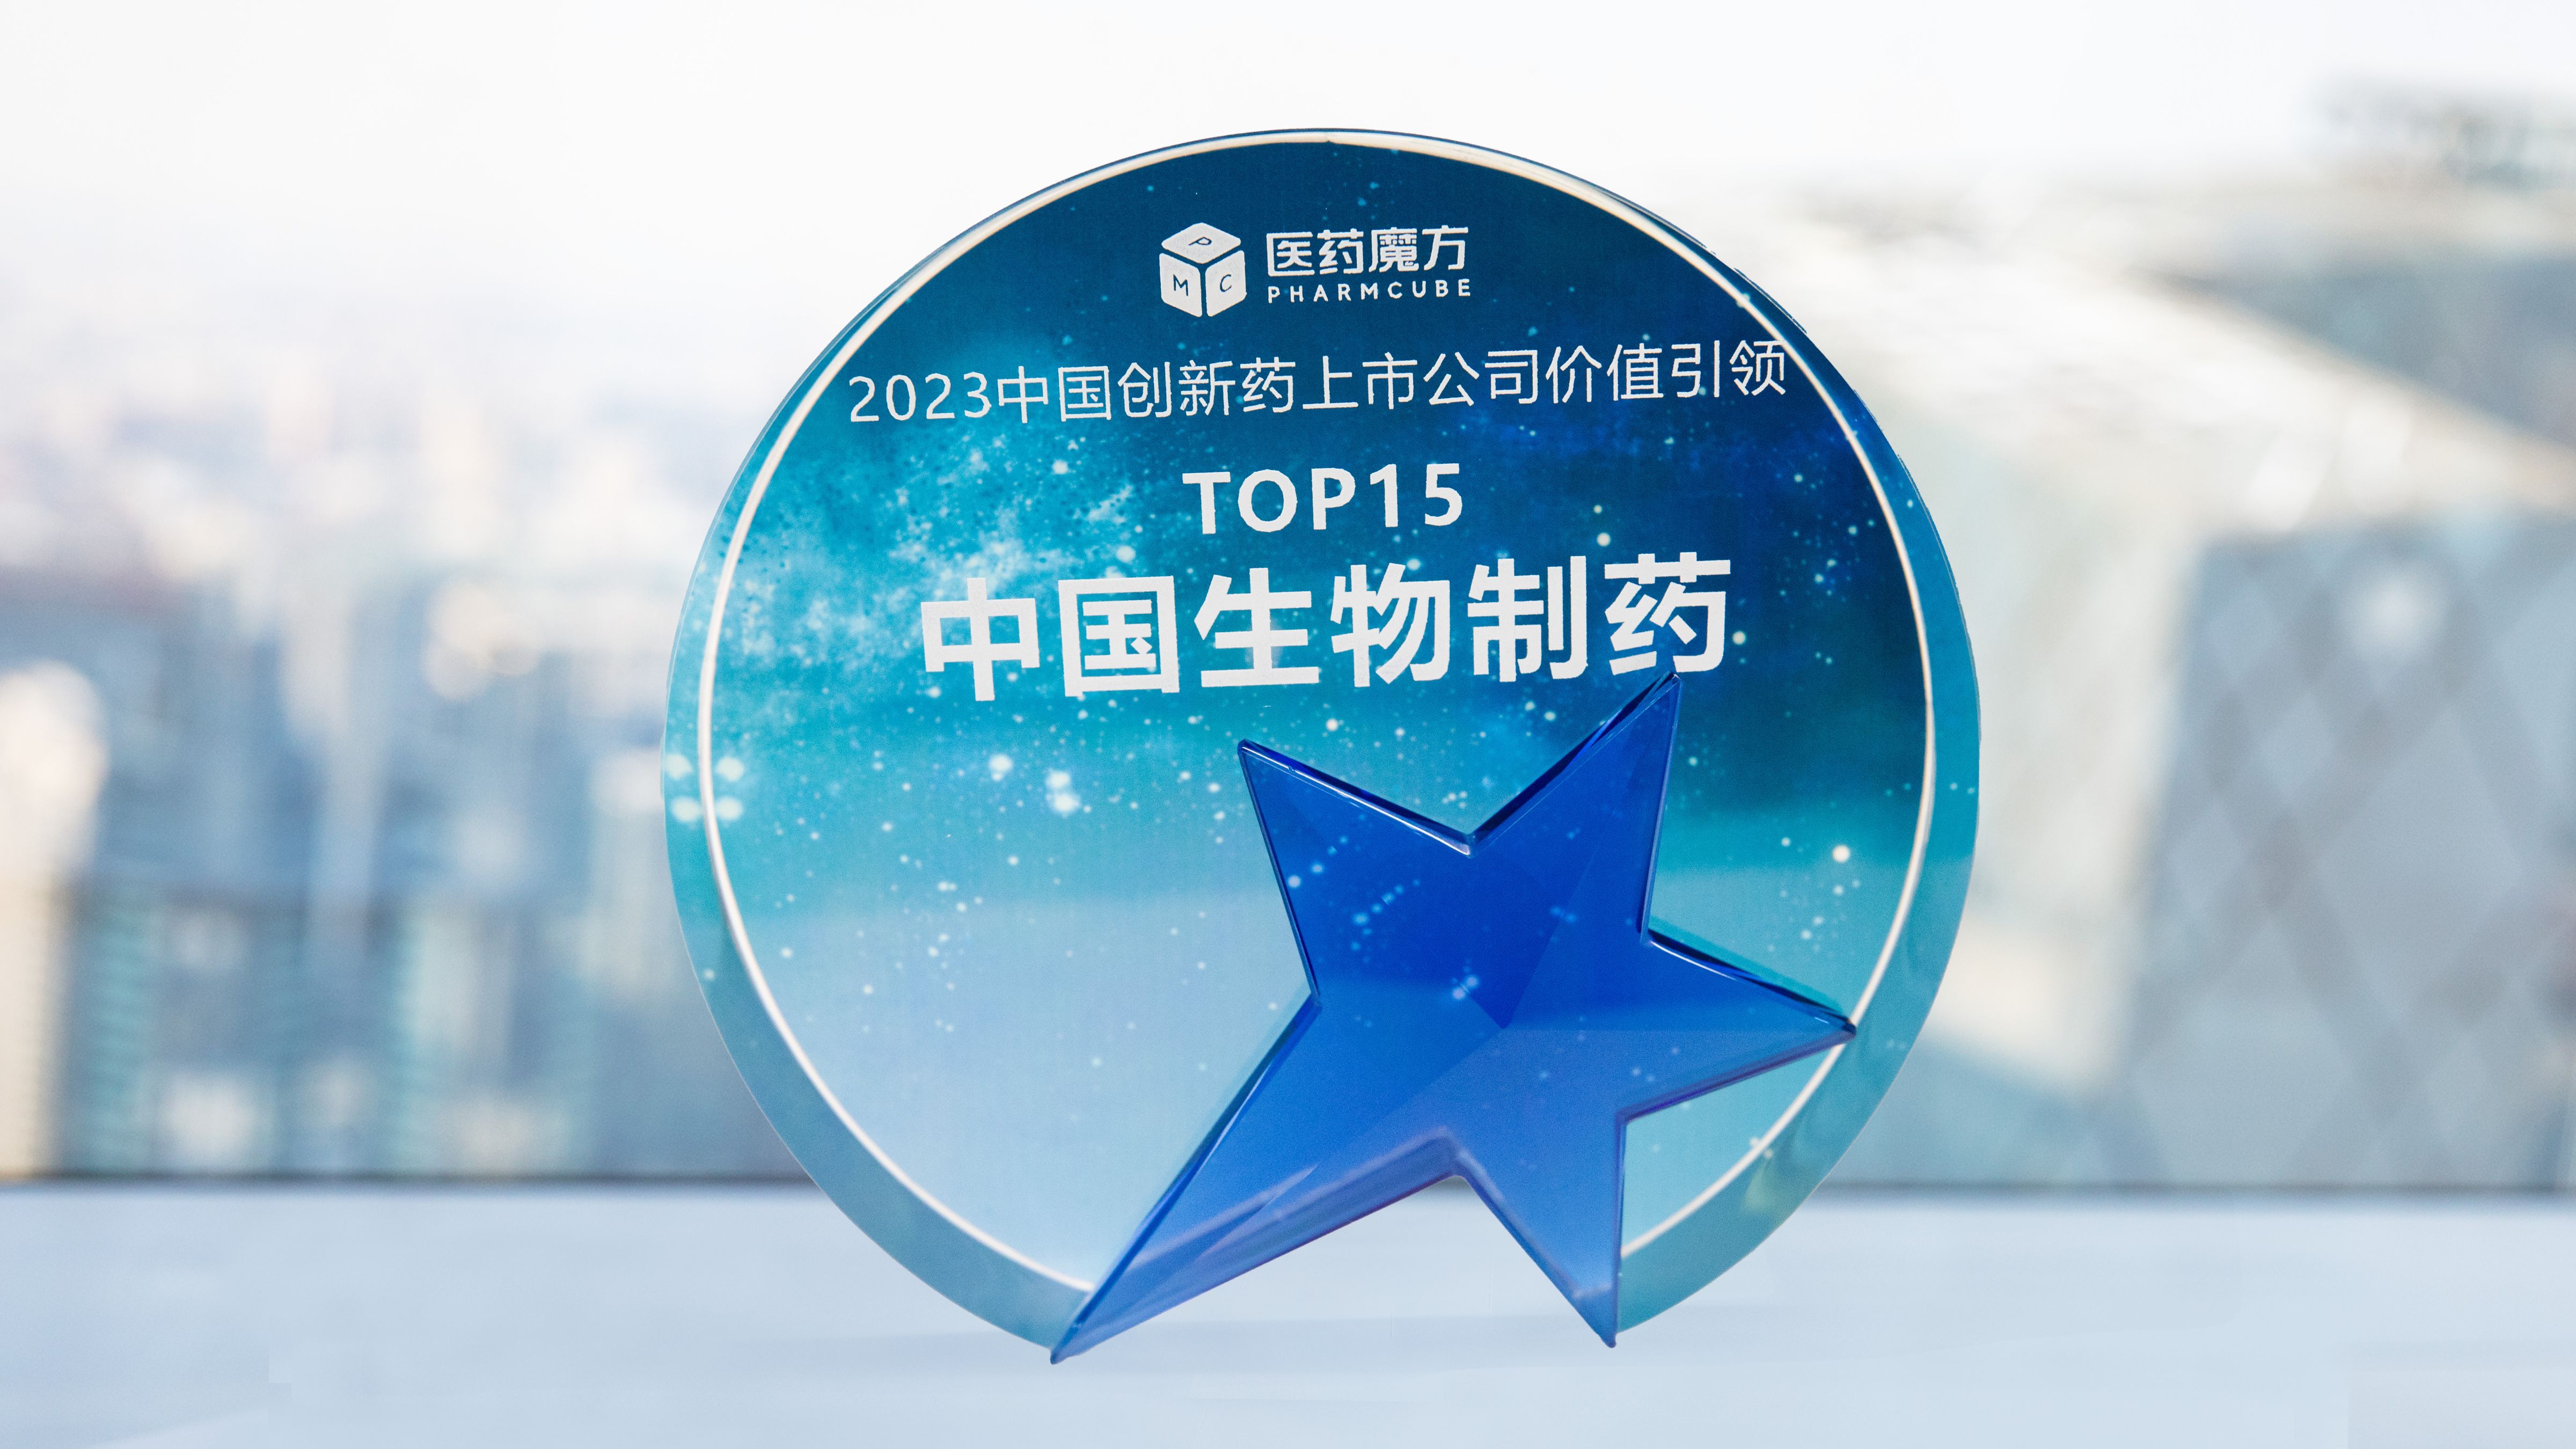 荣誉+1! 凯发k8一触即发制药获评 “中国创新药上市公司价值引领TOP15”